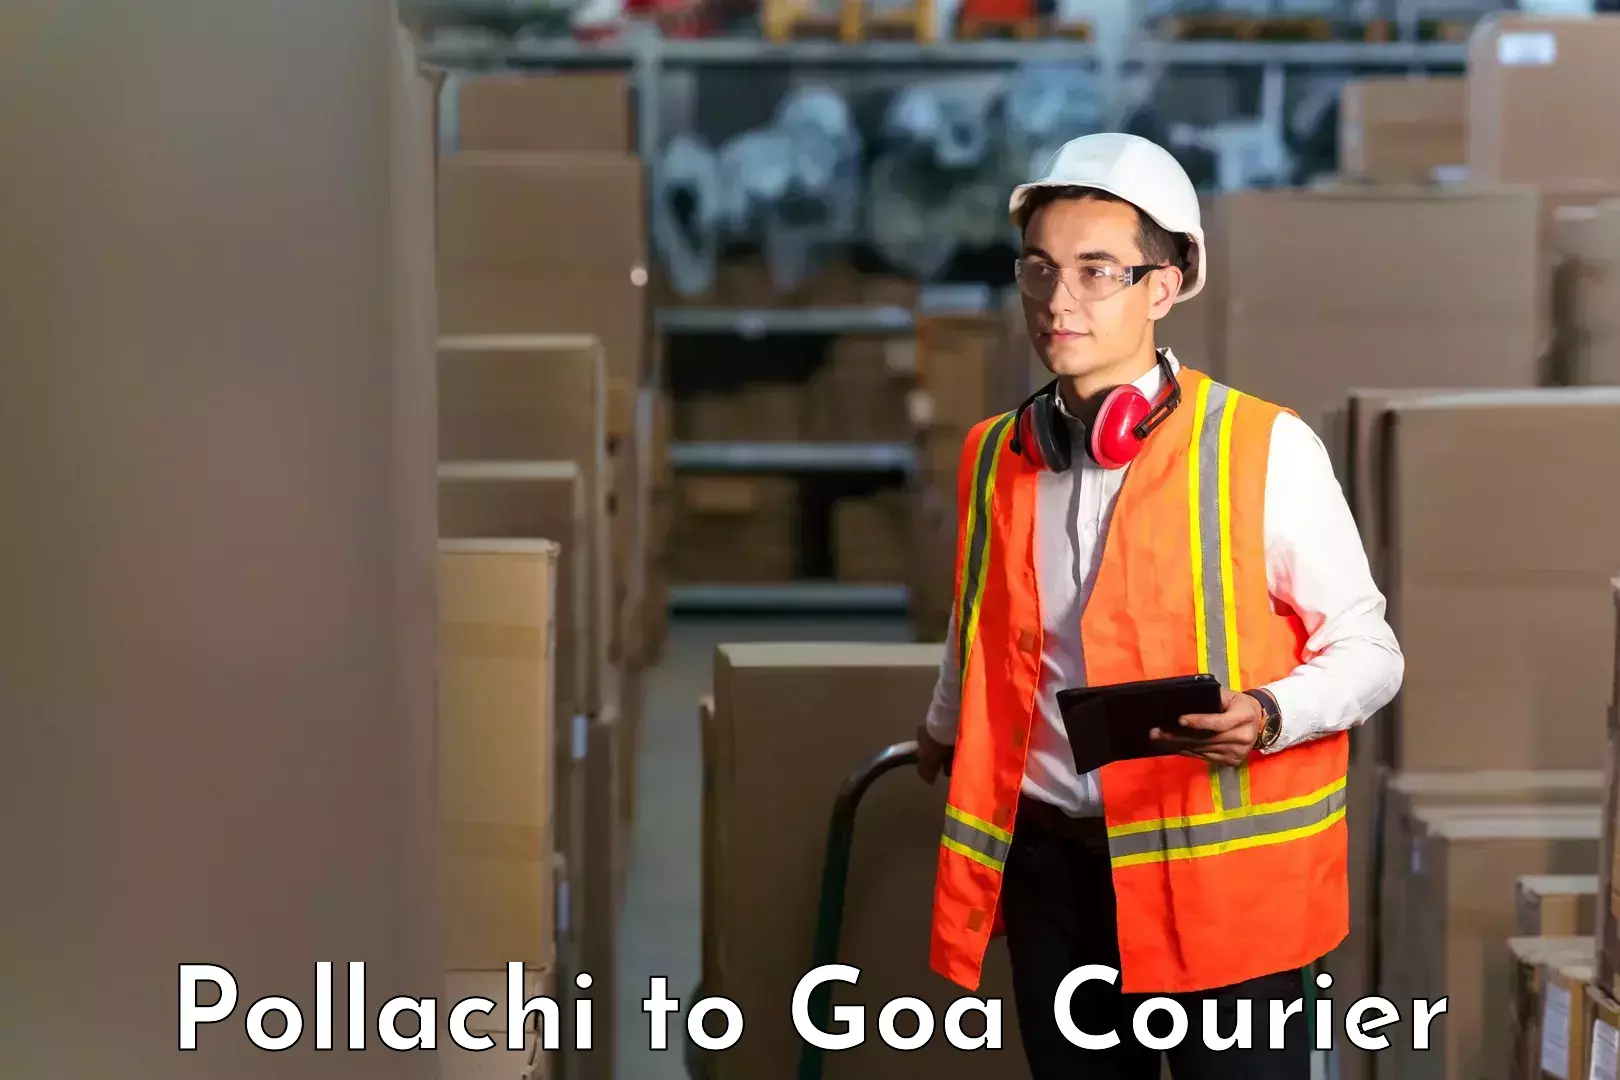 Cargo courier service Pollachi to South Goa